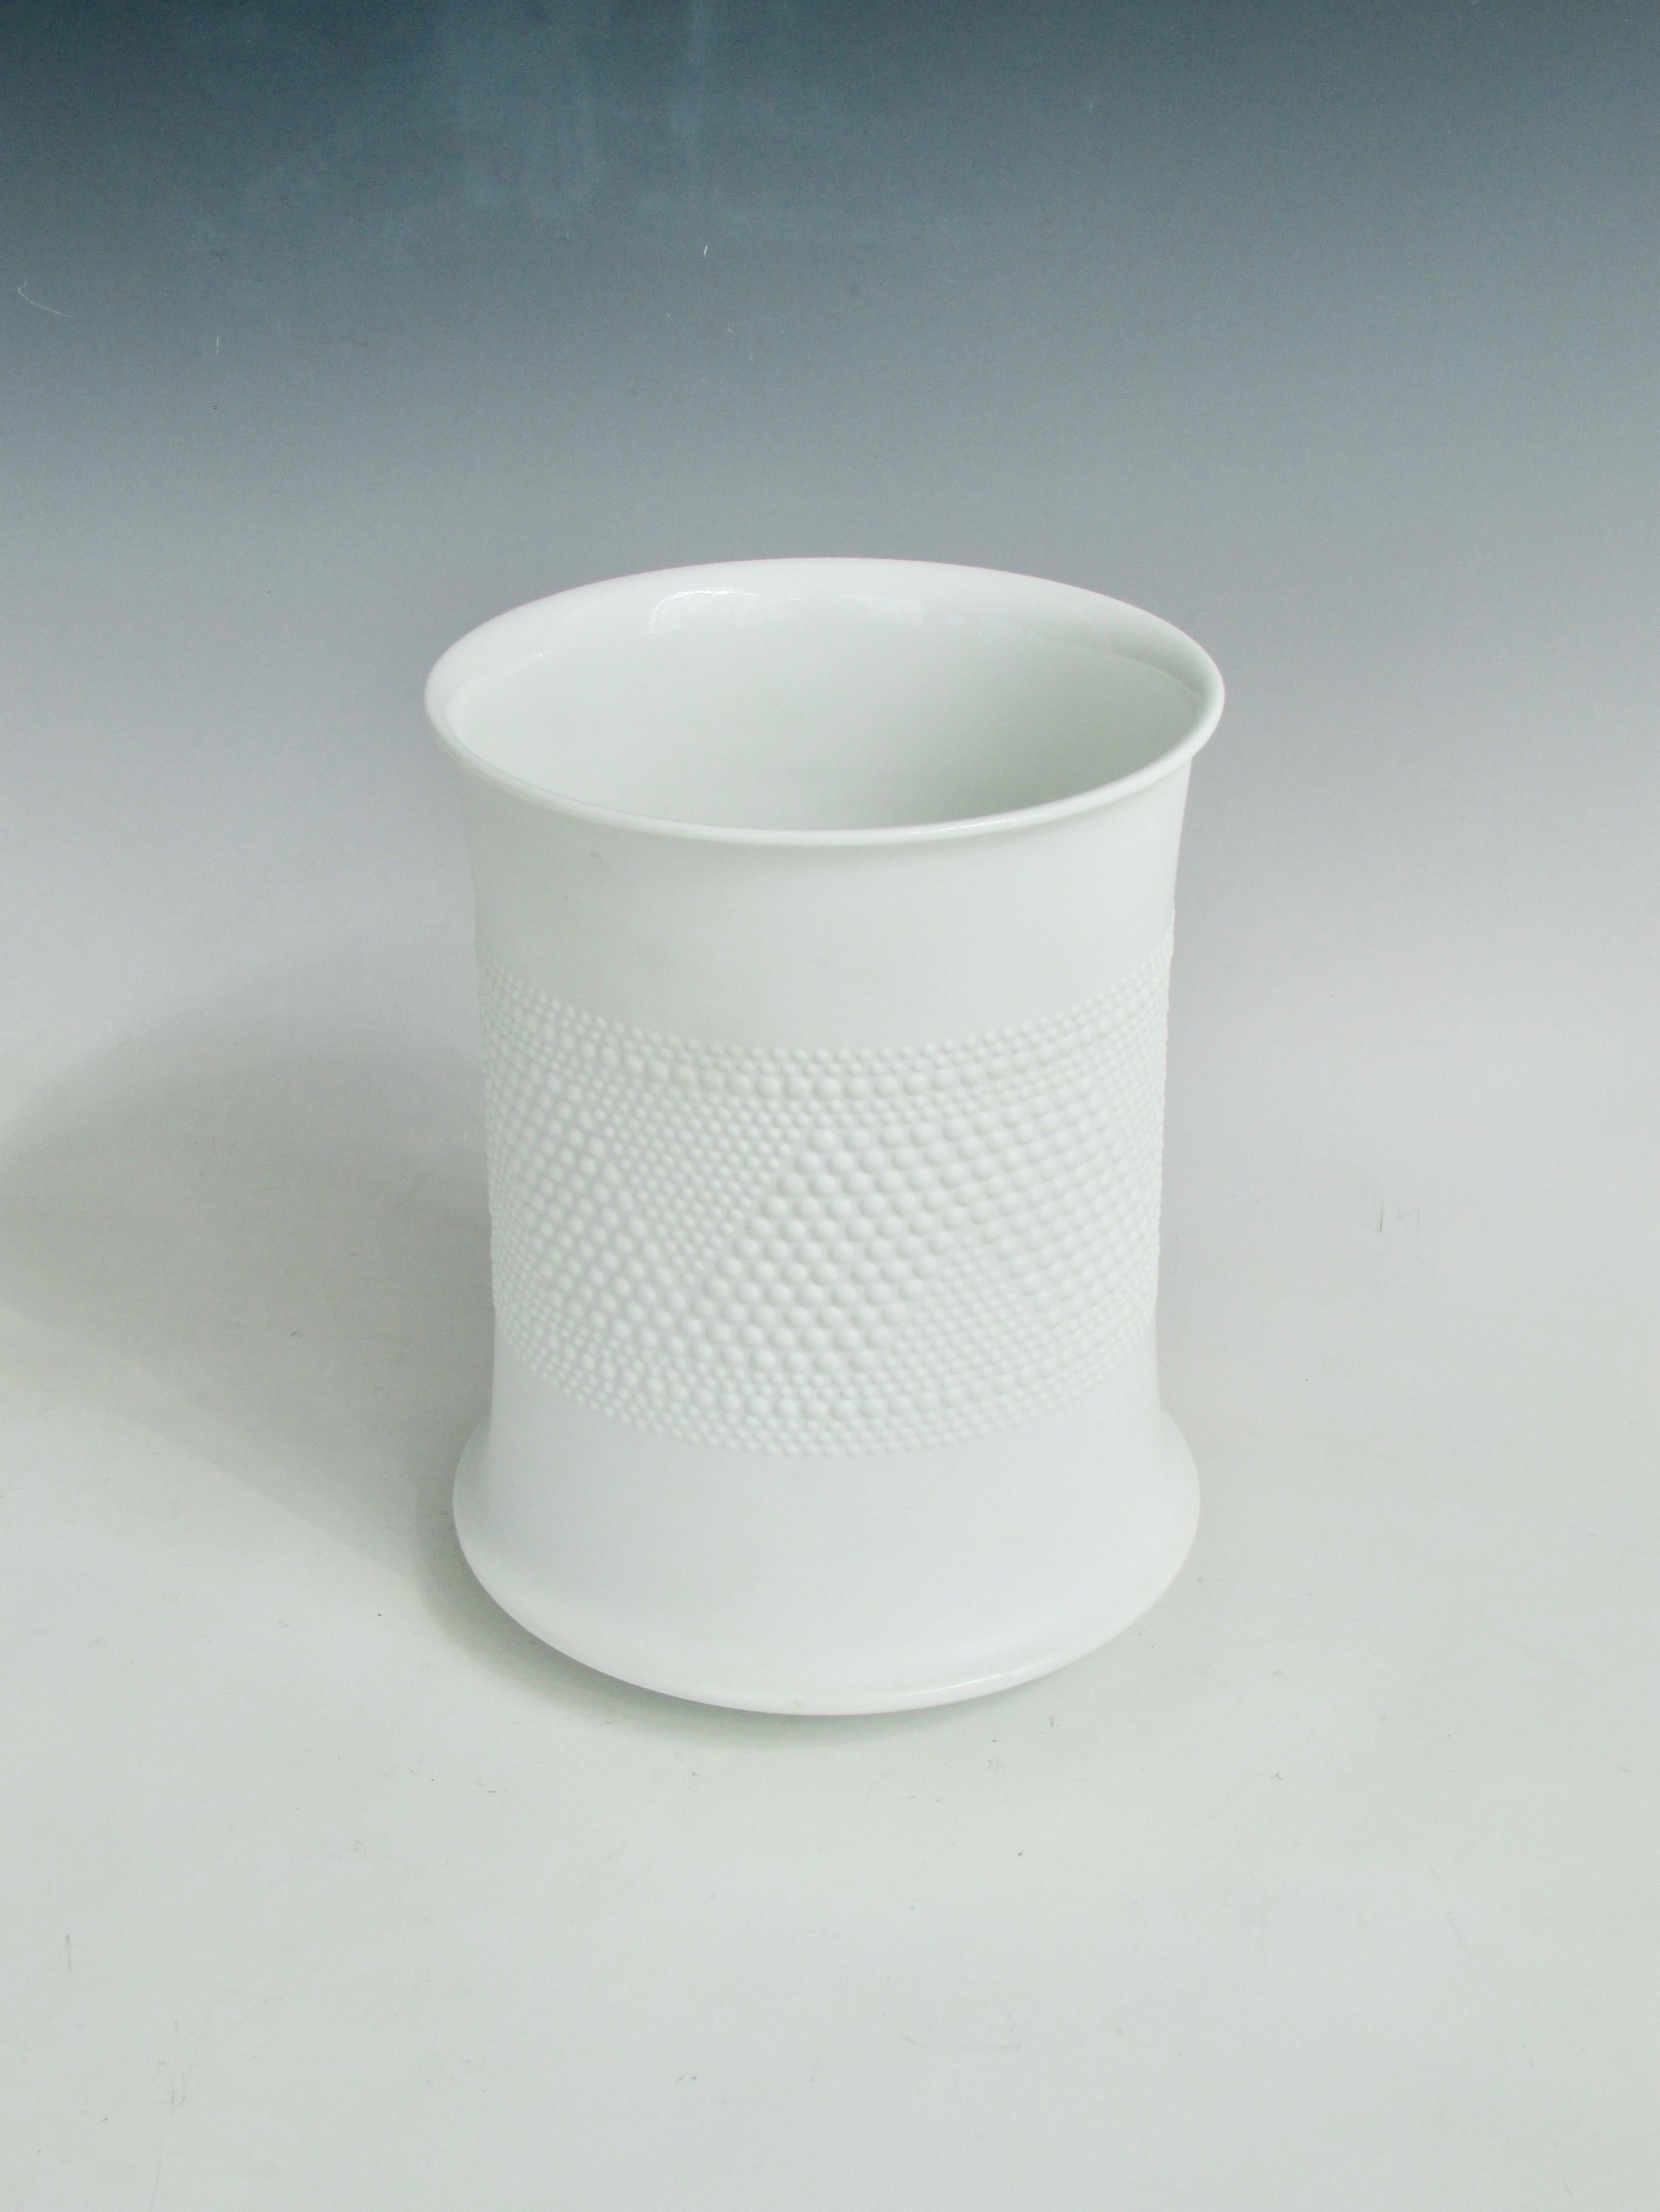 Grand vase en porcelaine blanche de forme cylindrique à ouverture évasée . Conçu en 1970 par Tapio Wirkkala pour Rosenthal Studio Line . Design/One tactile sur l'extérieur. Extérieur mat et intérieur brillant. Marqué en dessous. Excellent état. Bien